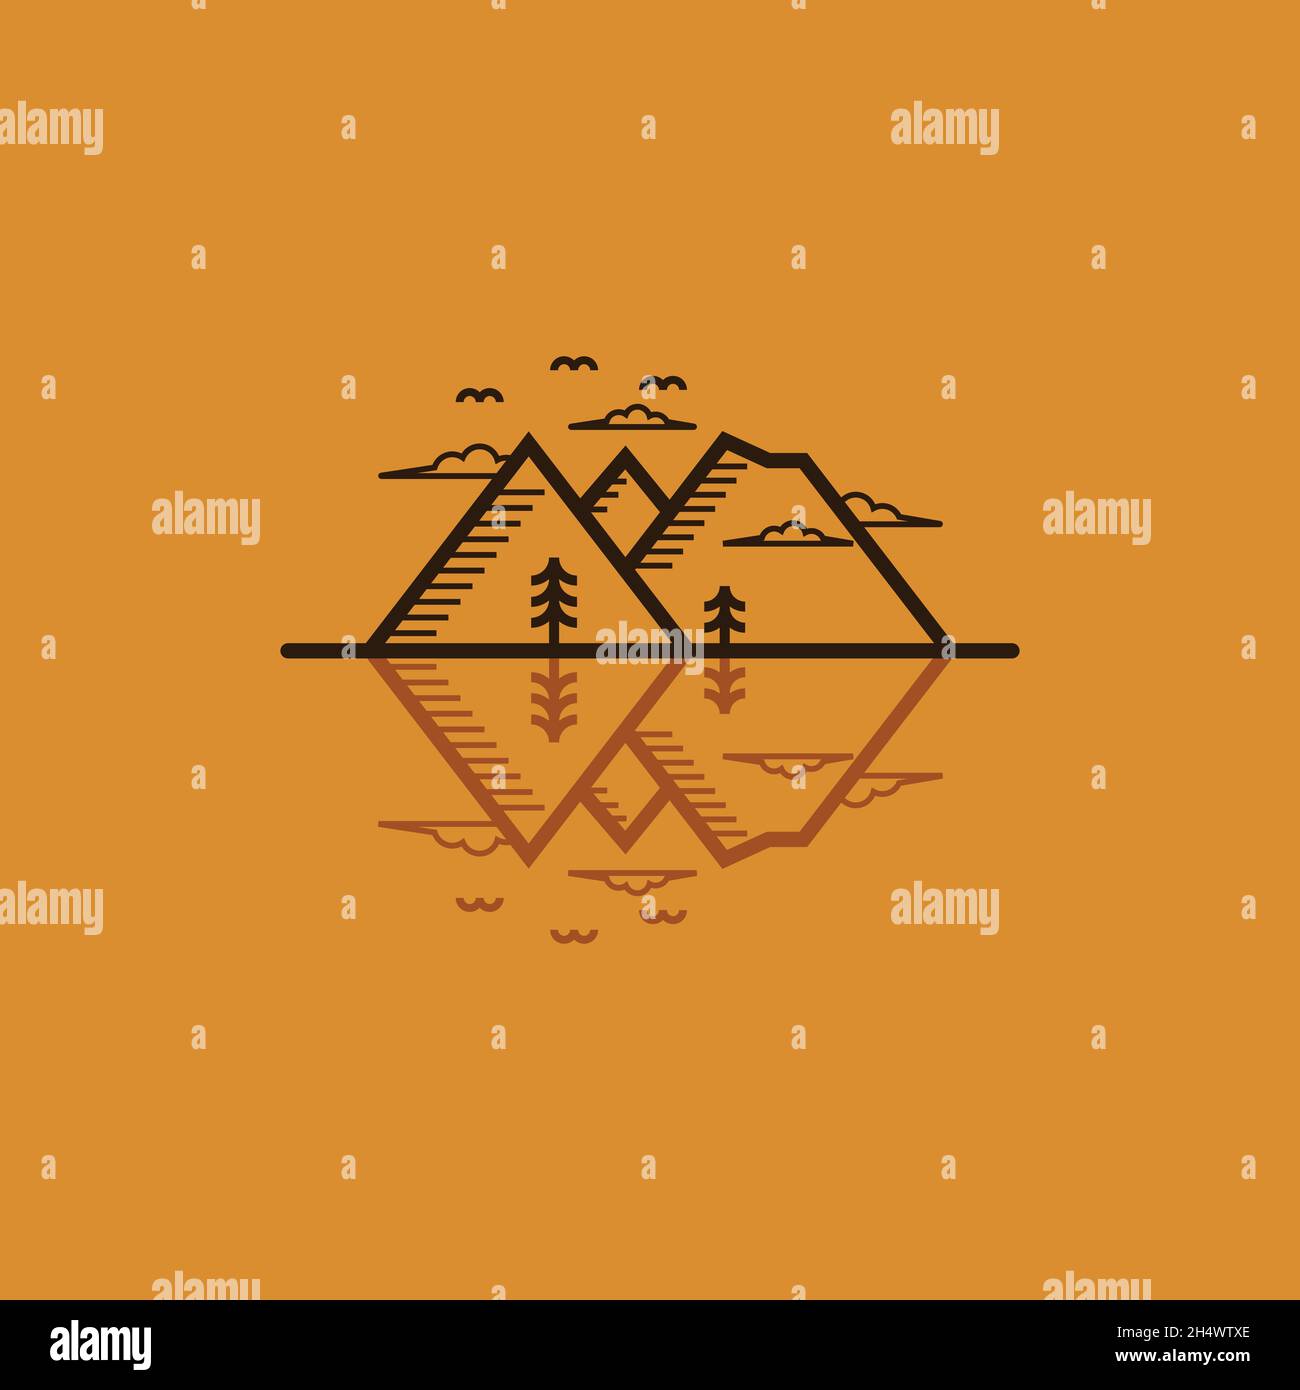 illustrazioni vettoriali. il logo forma una linea di riflessione d'acqua con la montagna. viaggio, avventura e logo outdoor Illustrazione Vettoriale